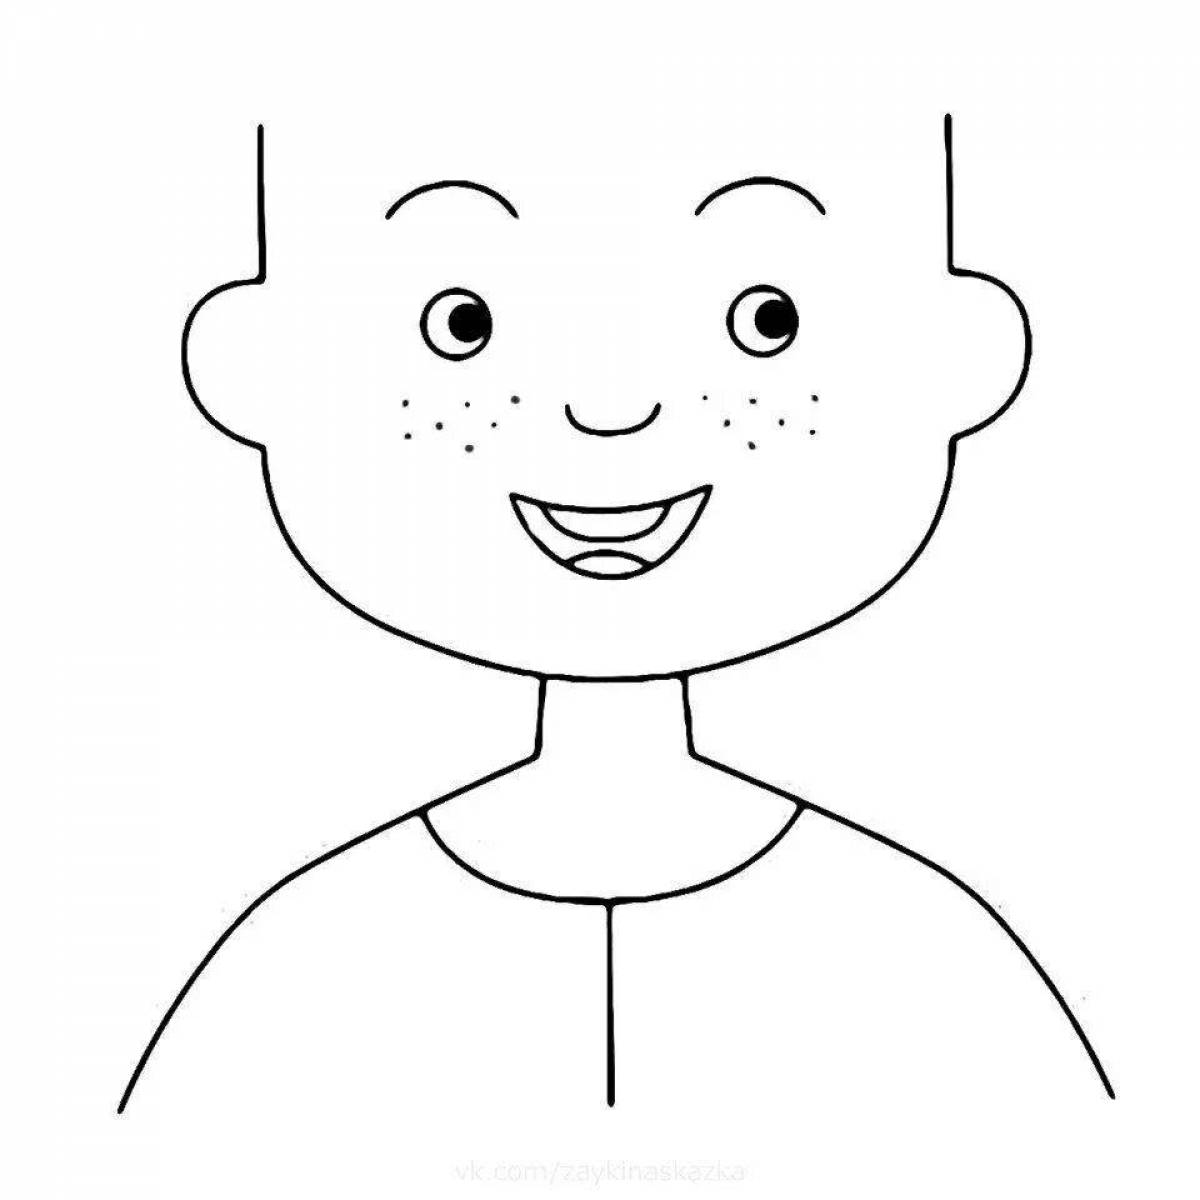 Раскраска с изображением человеческого лица